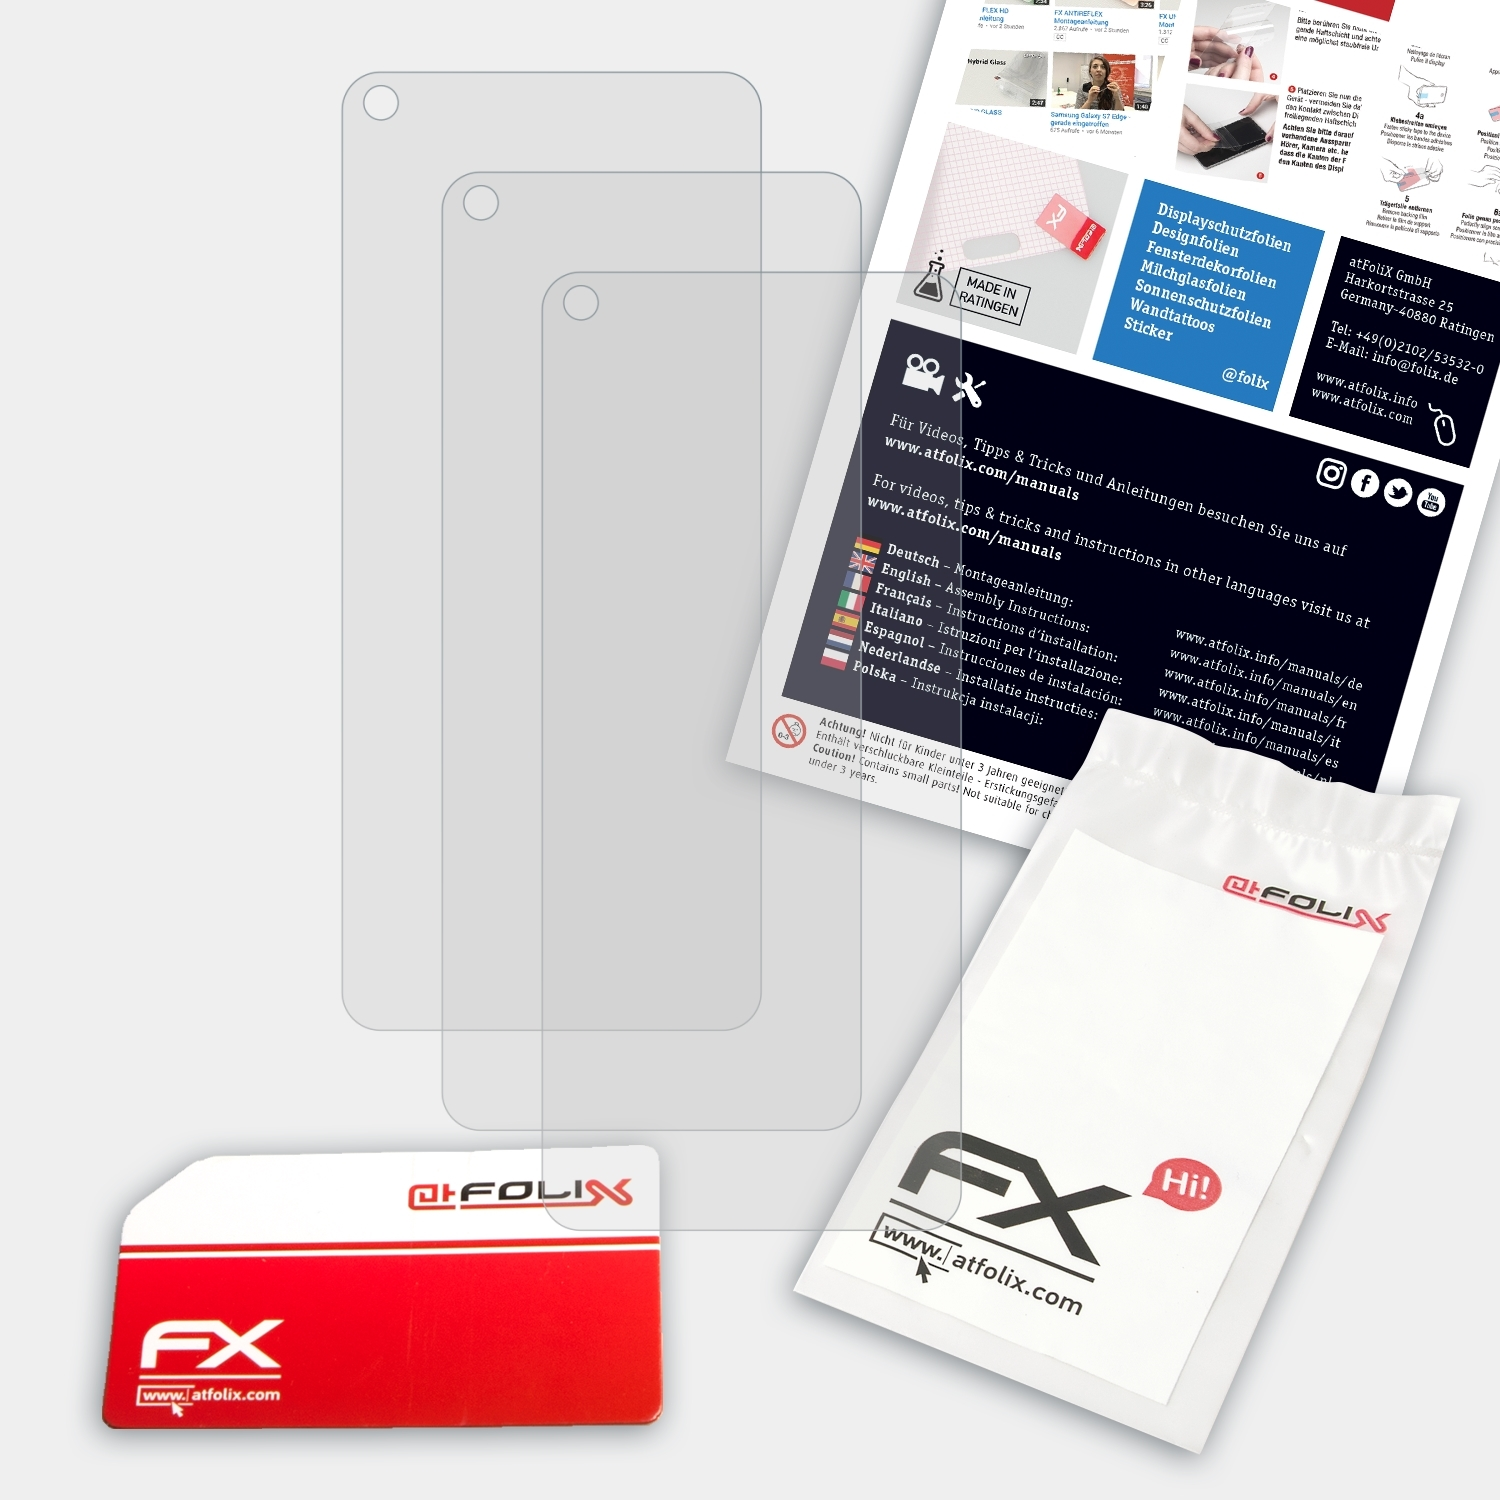 ATFOLIX 3x FX-Antireflex Displayschutz(für Oppo A55)